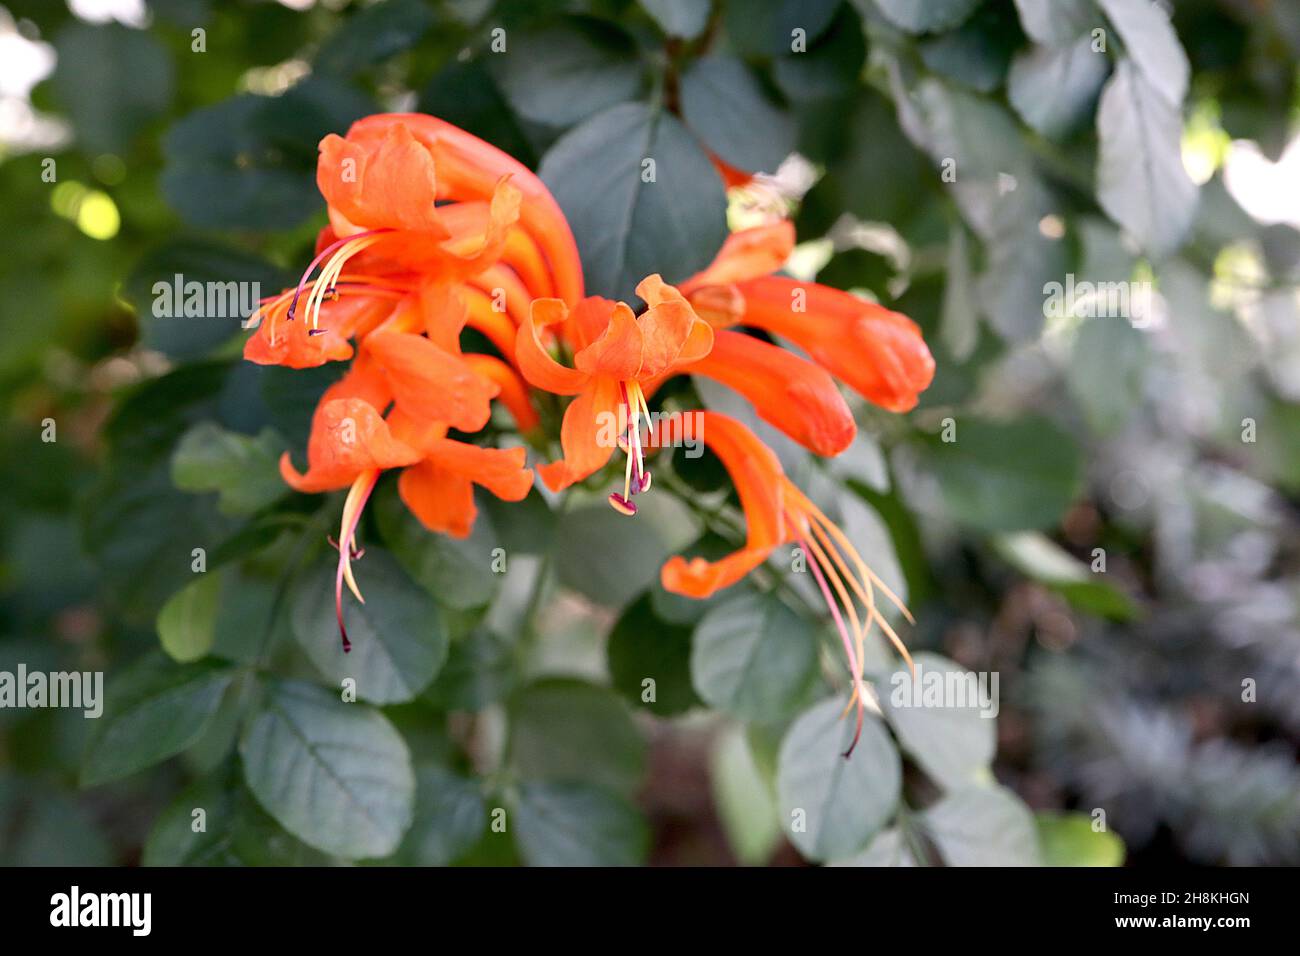 Tecomaria capensis cape honeysuckle – fiori tubolari rosso arancio e foglie ovali verde scuro, novembre, Inghilterra, Regno Unito Foto Stock